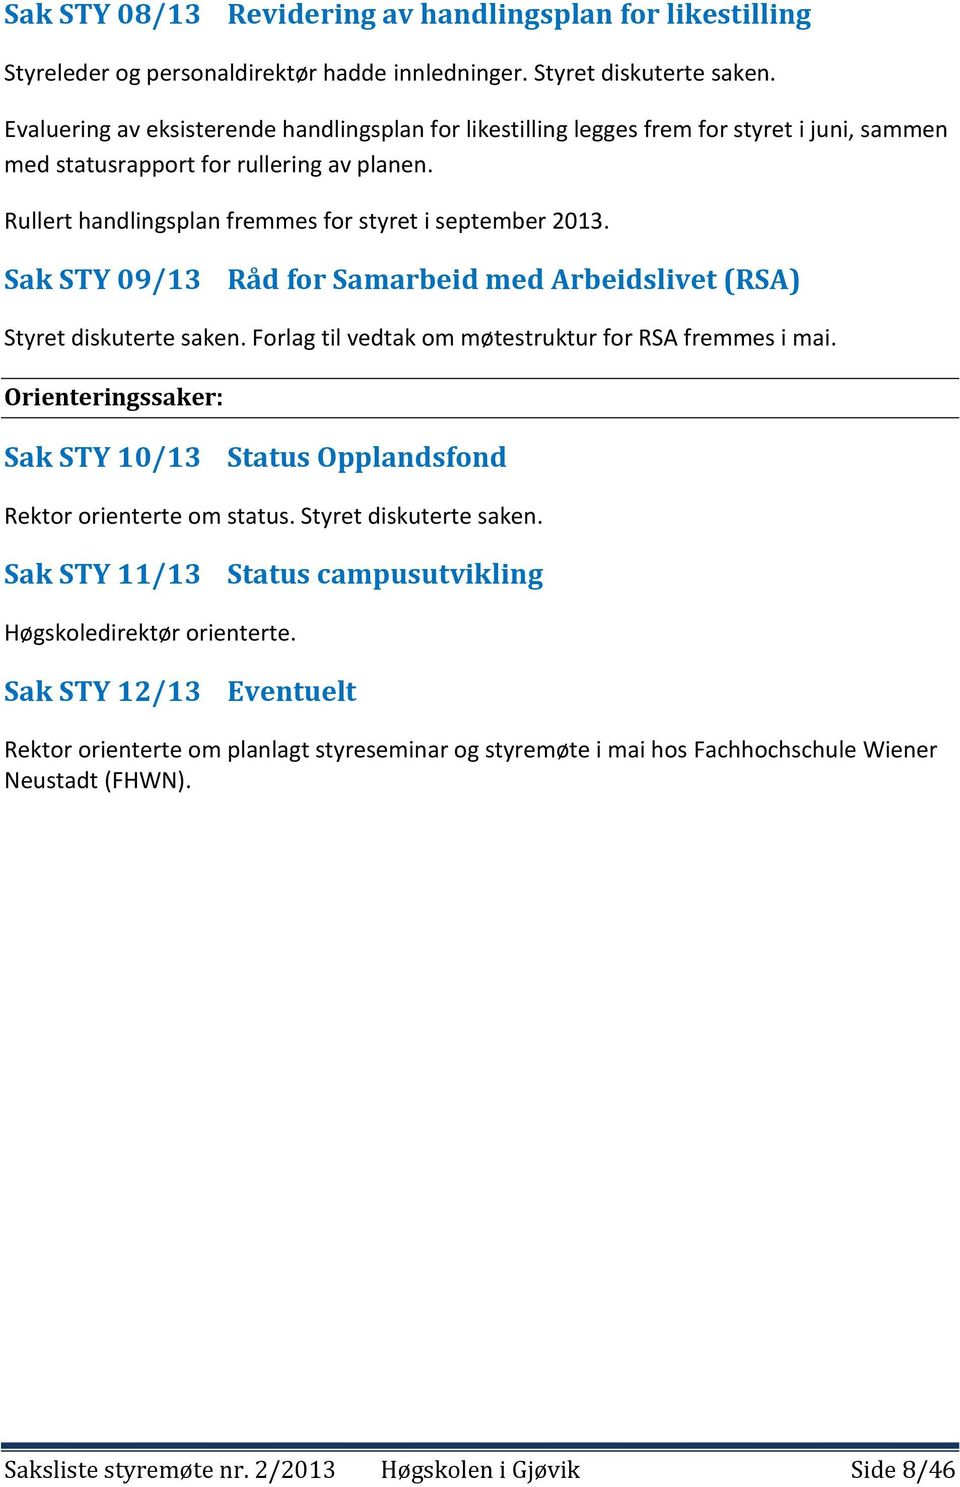 Sak STY 09/13 Råd for Samarbeid med Arbeidslivet (RSA) Styret diskuterte saken. Forlag til vedtak om møtestruktur for RSA fremmes i mai.